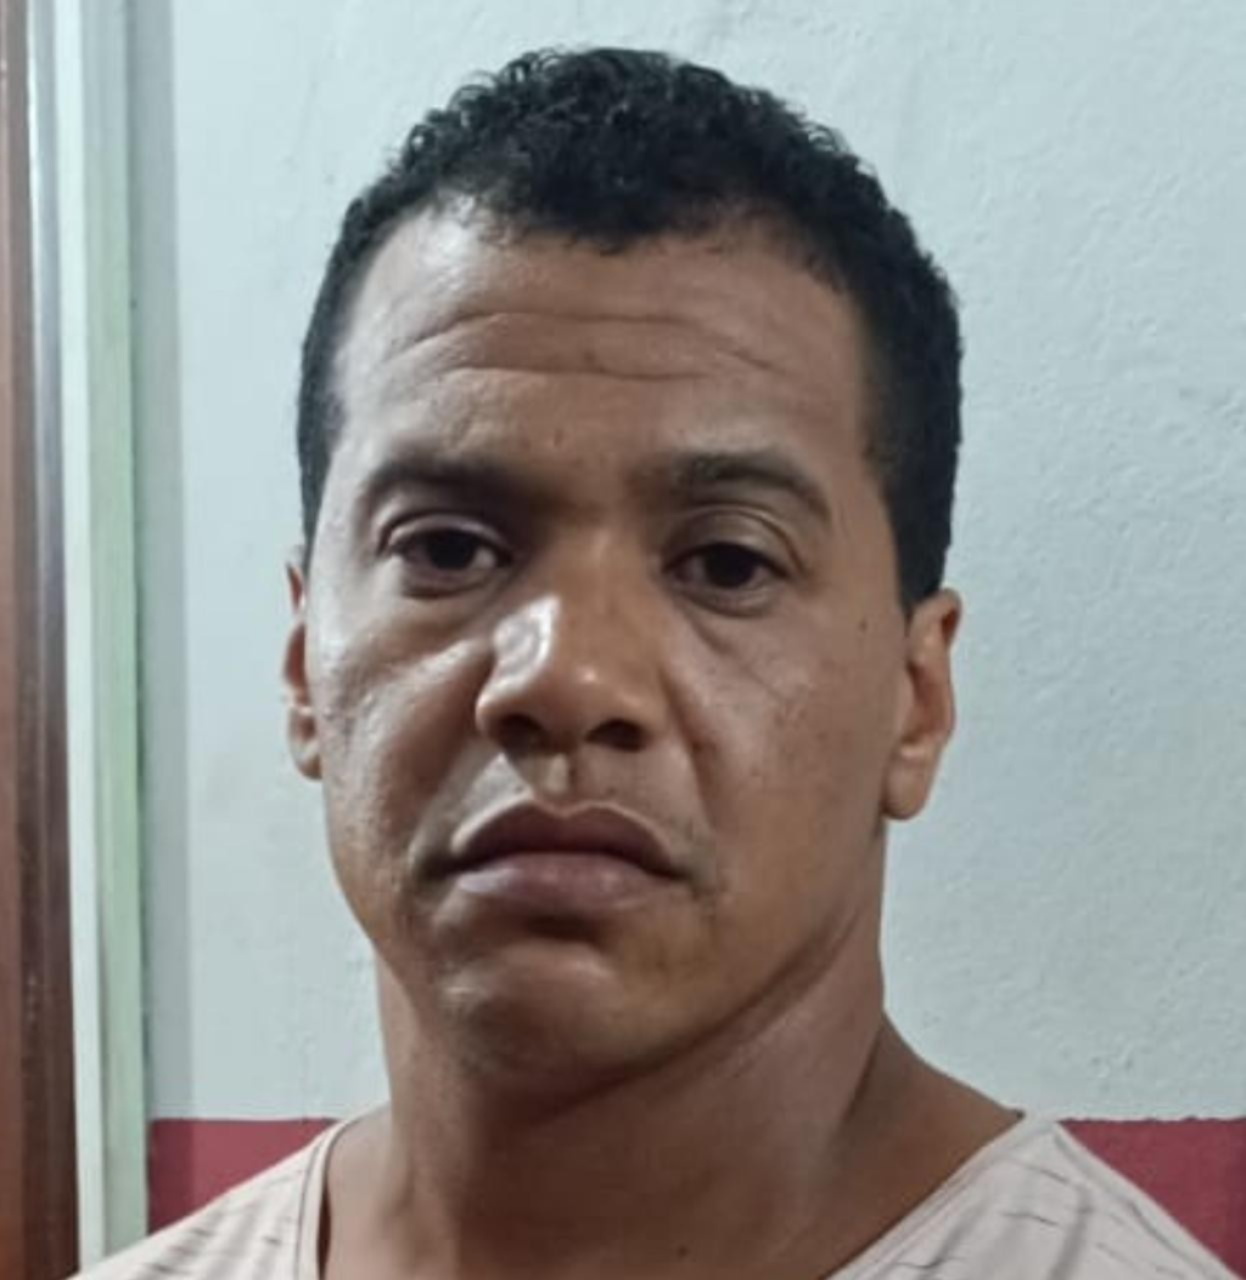 Capturan a peligroso criminal brasileño con cinco órdenes de captura y frondosos antecedentes en su país